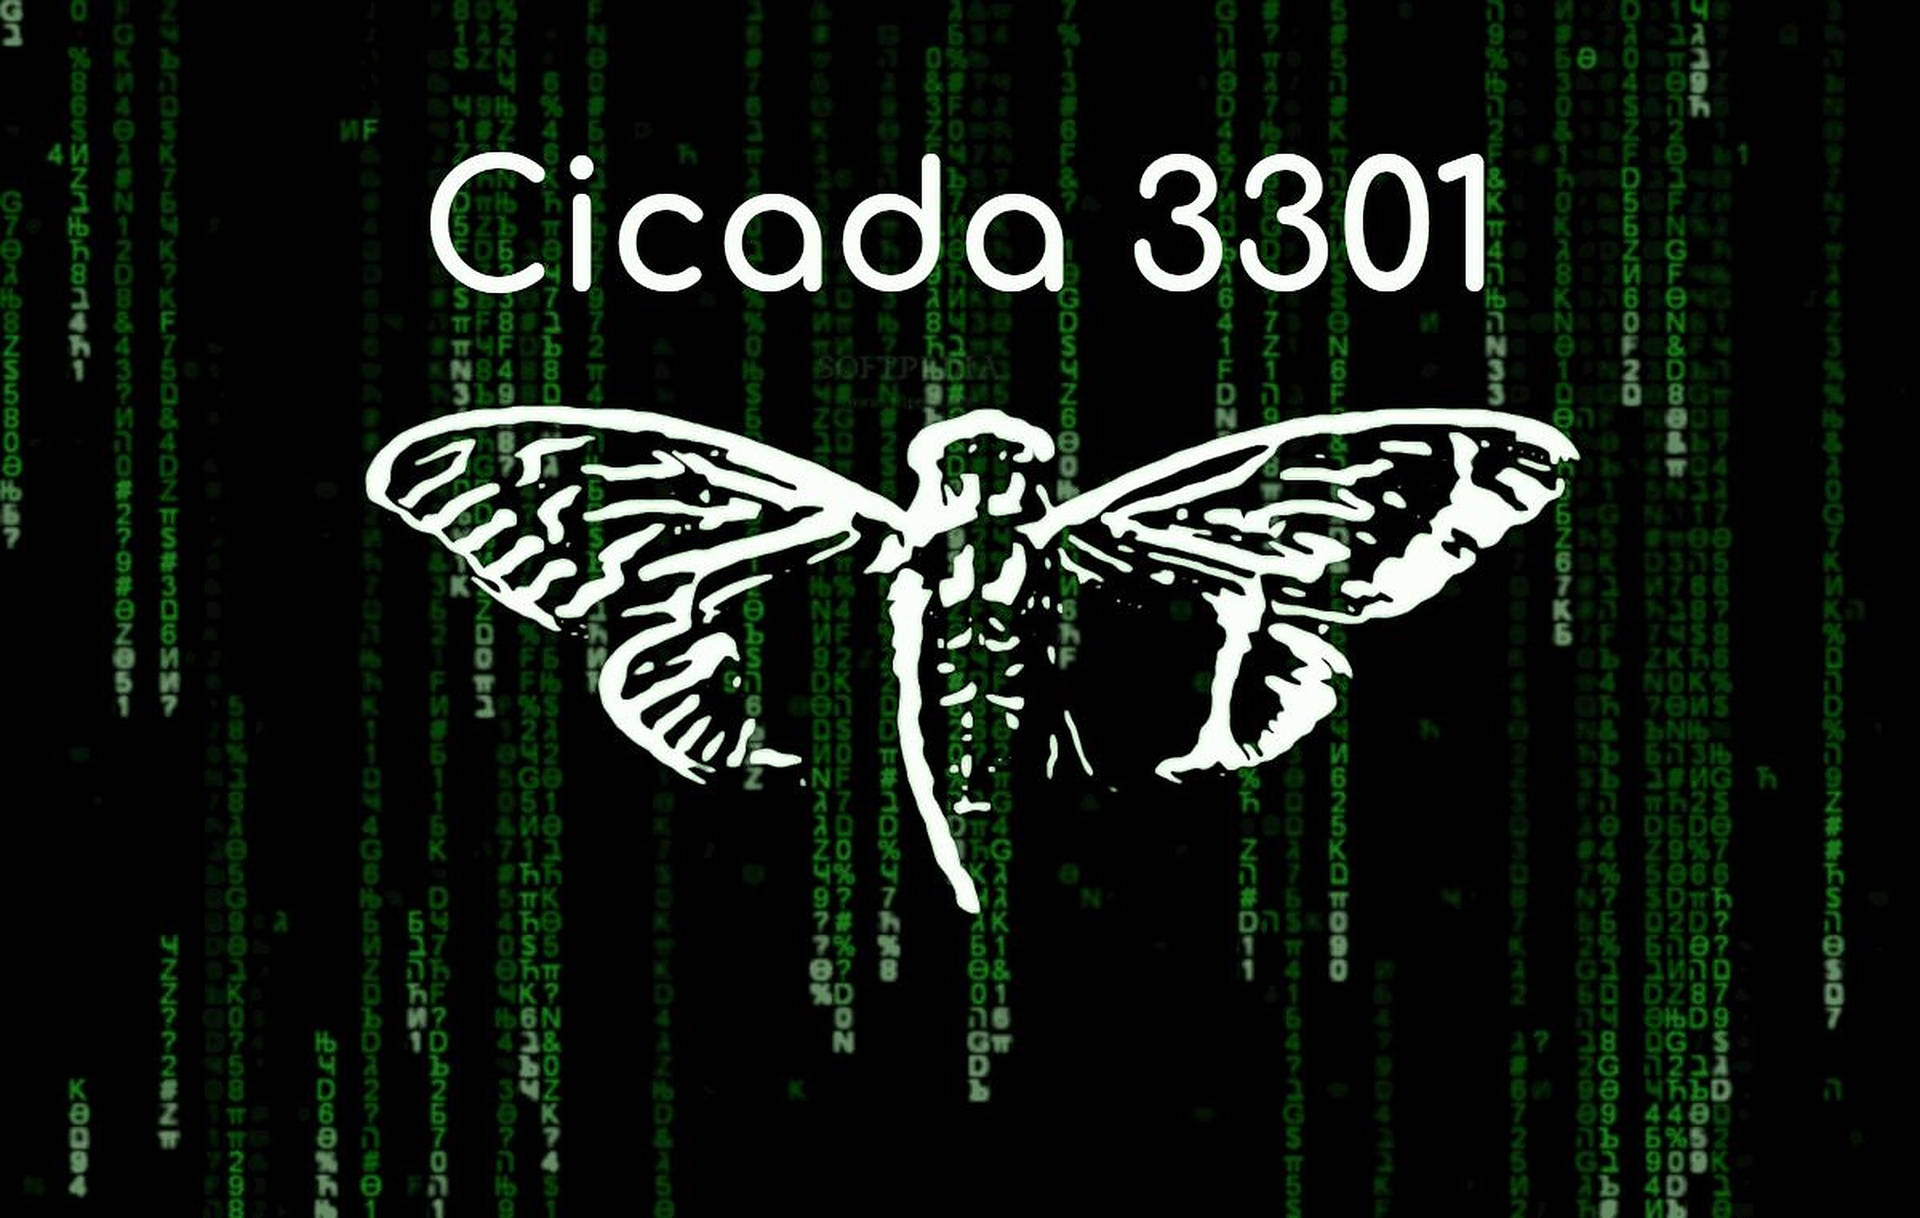 Cicada Matrix Art Wallpaper